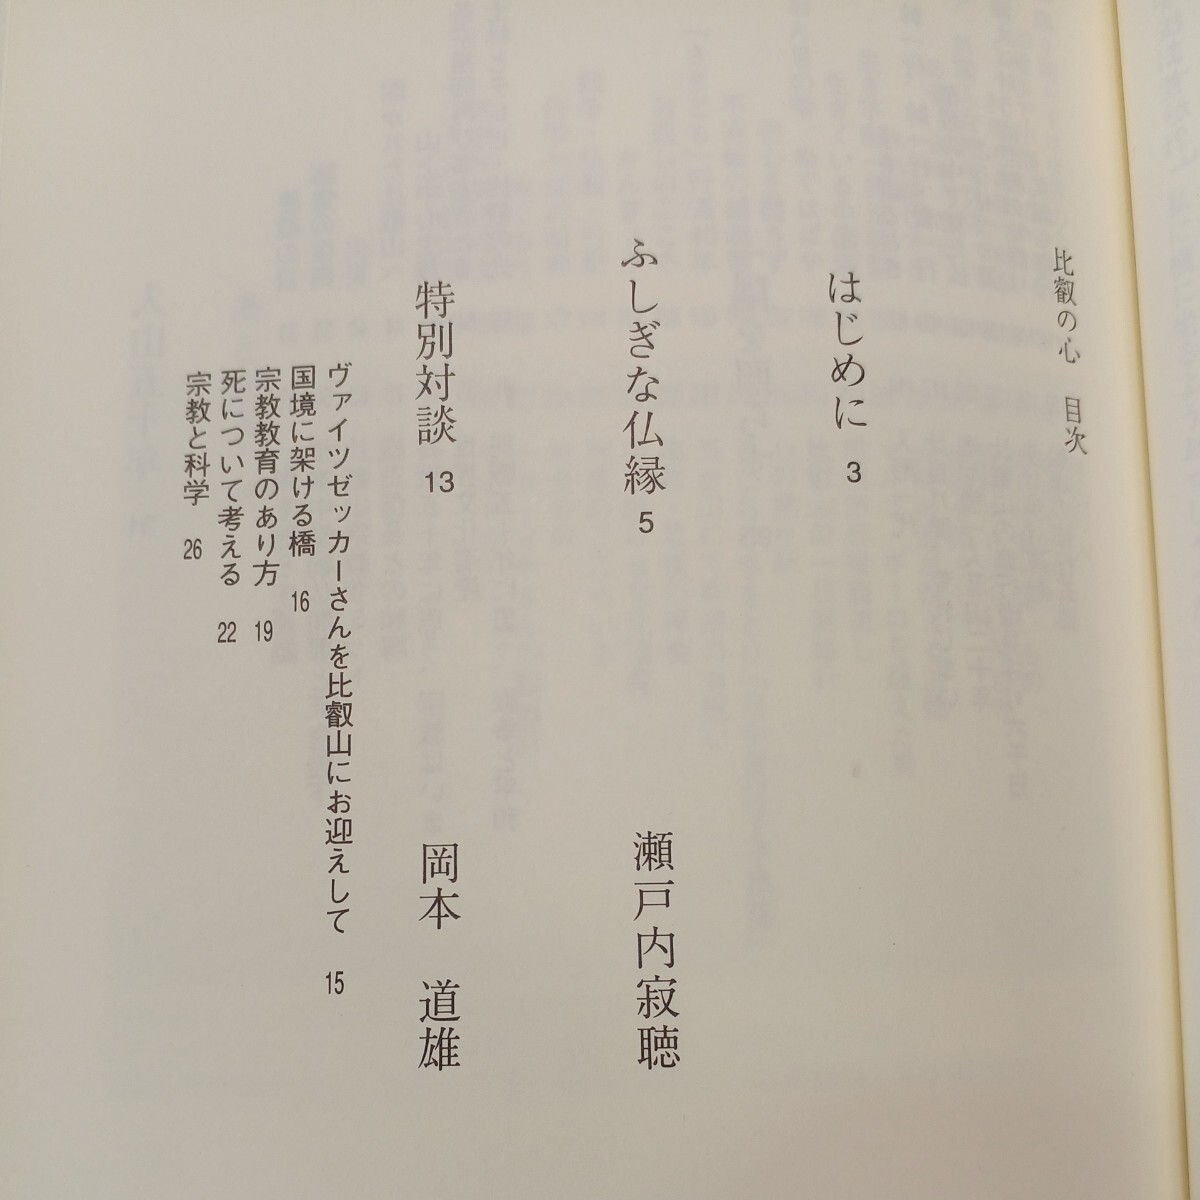 zaa-570♪比叡の心 単行本 小林 隆彰 (著) 紫翠会出版 (1995/10/1)_画像3